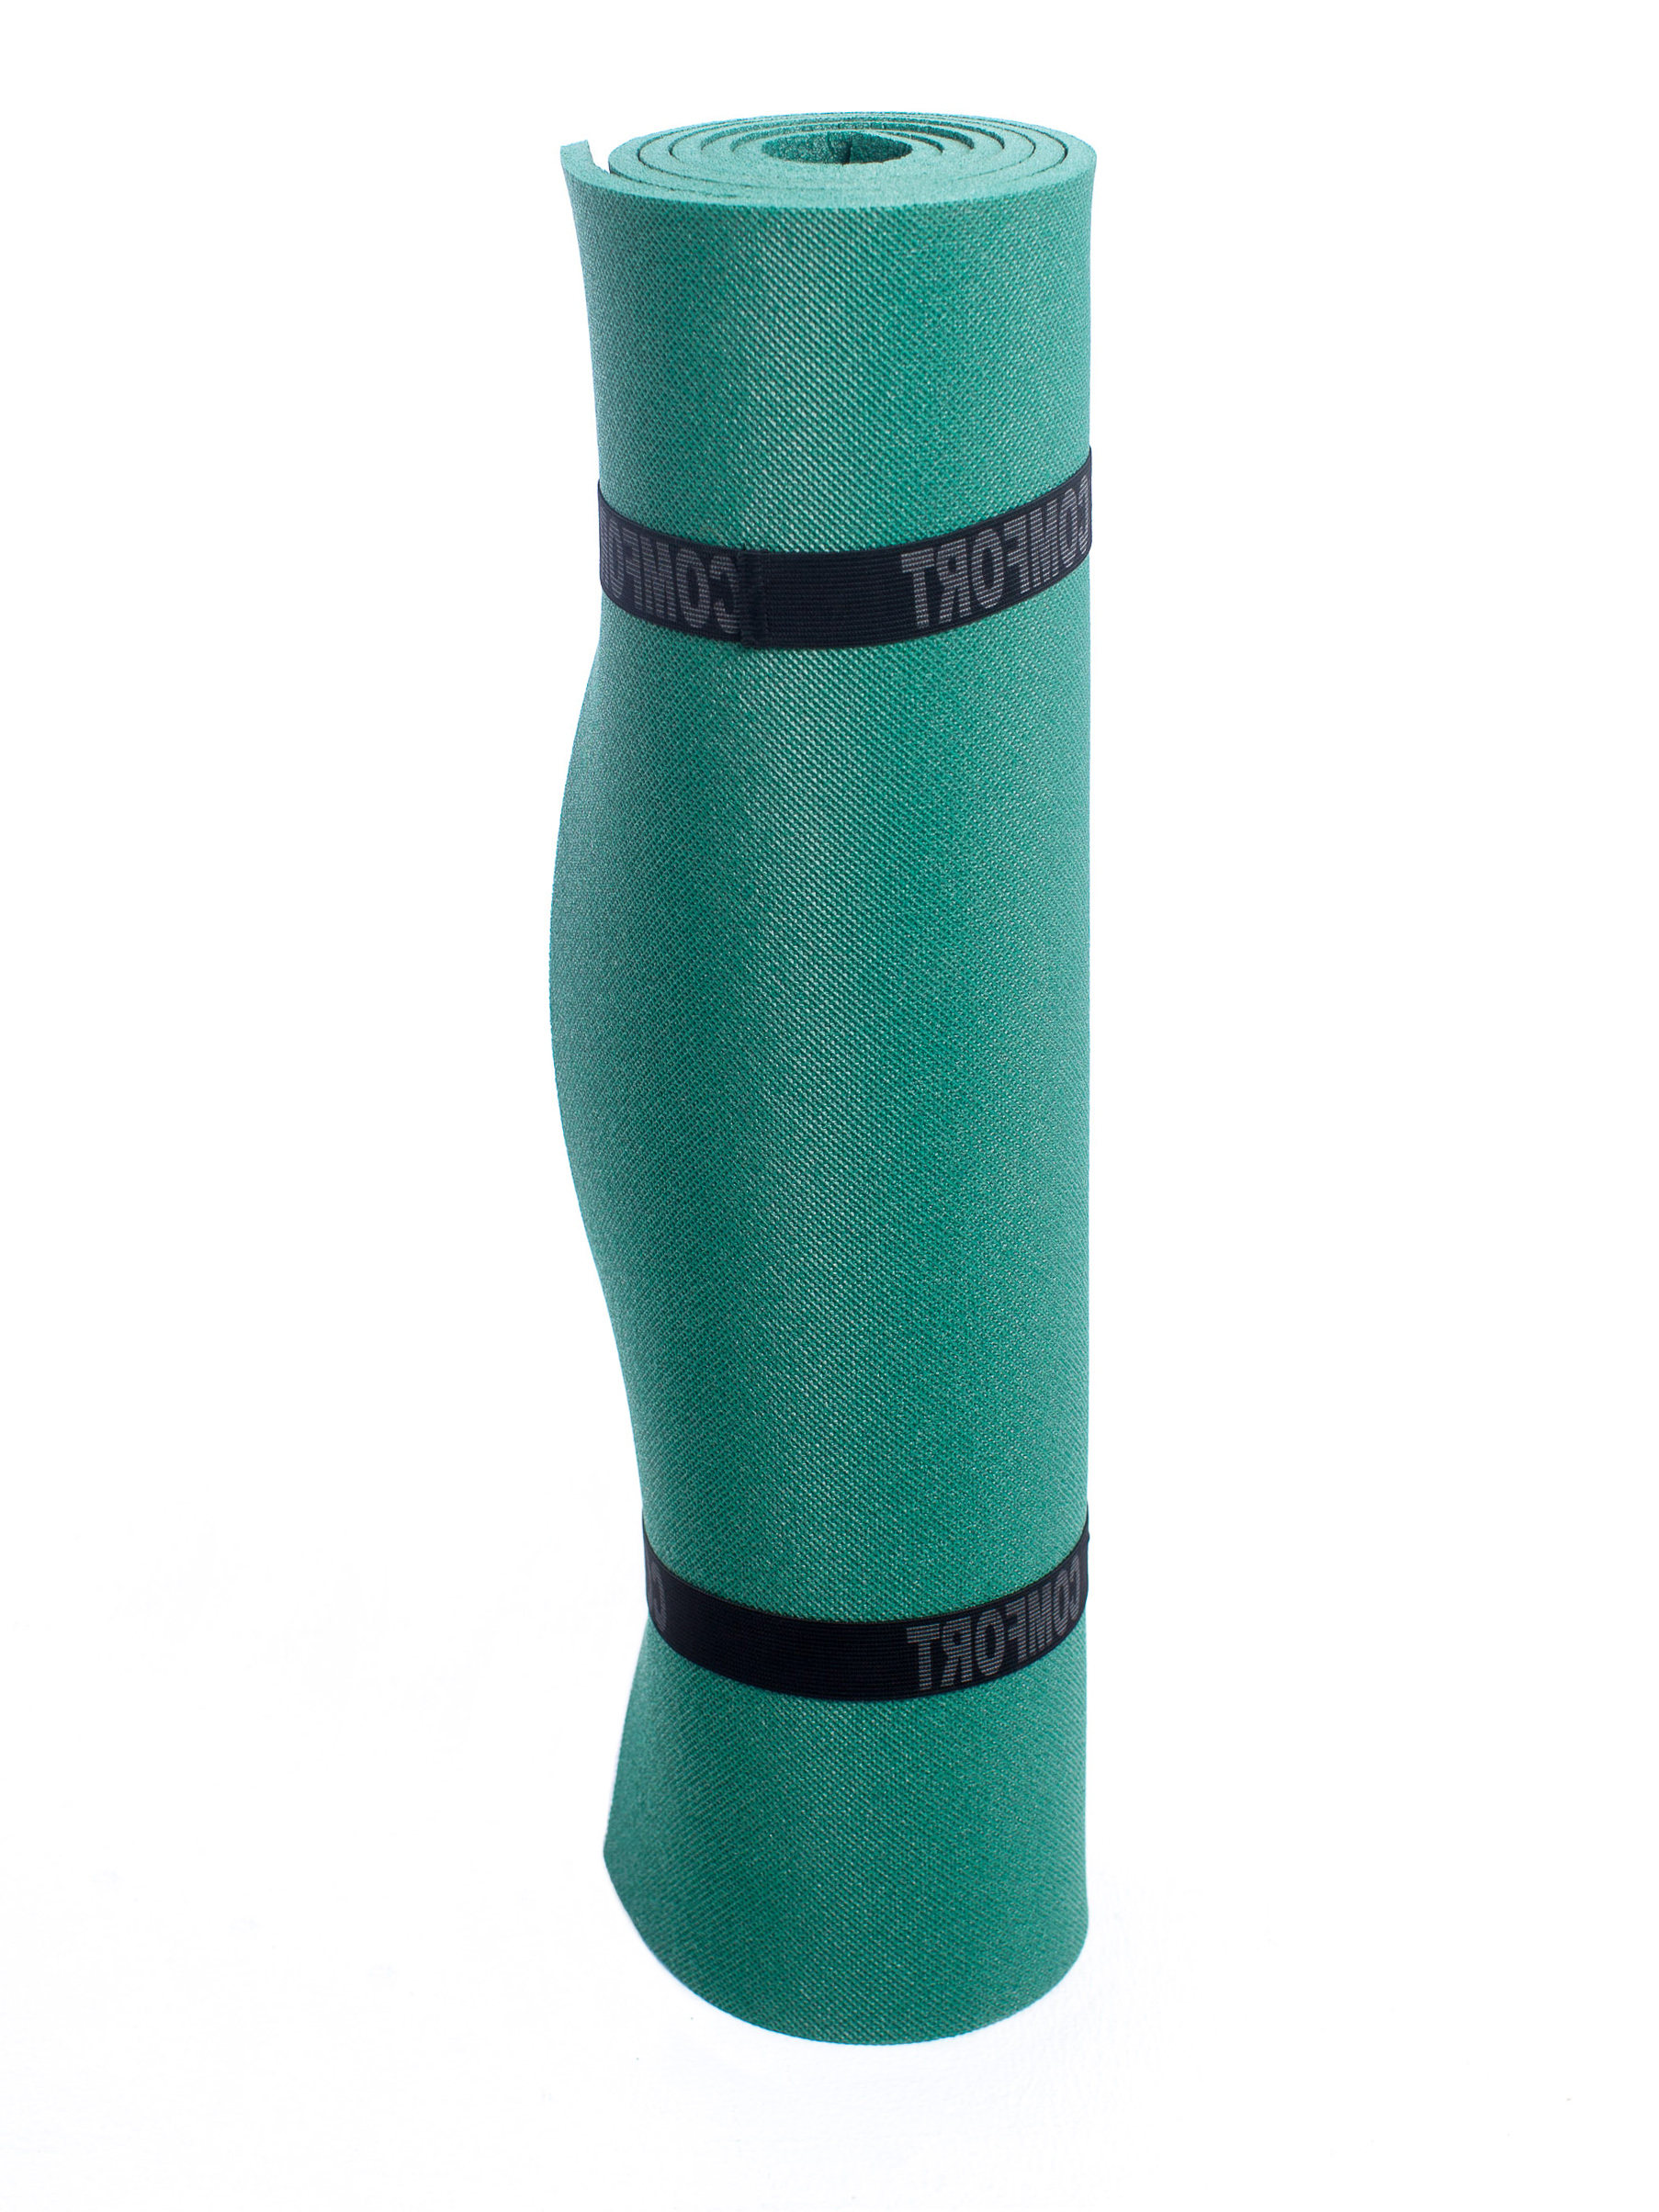 фото Коврик спортивно-туристический с рифлением comfort, цвет: зеленый, 1800x600x10 мм